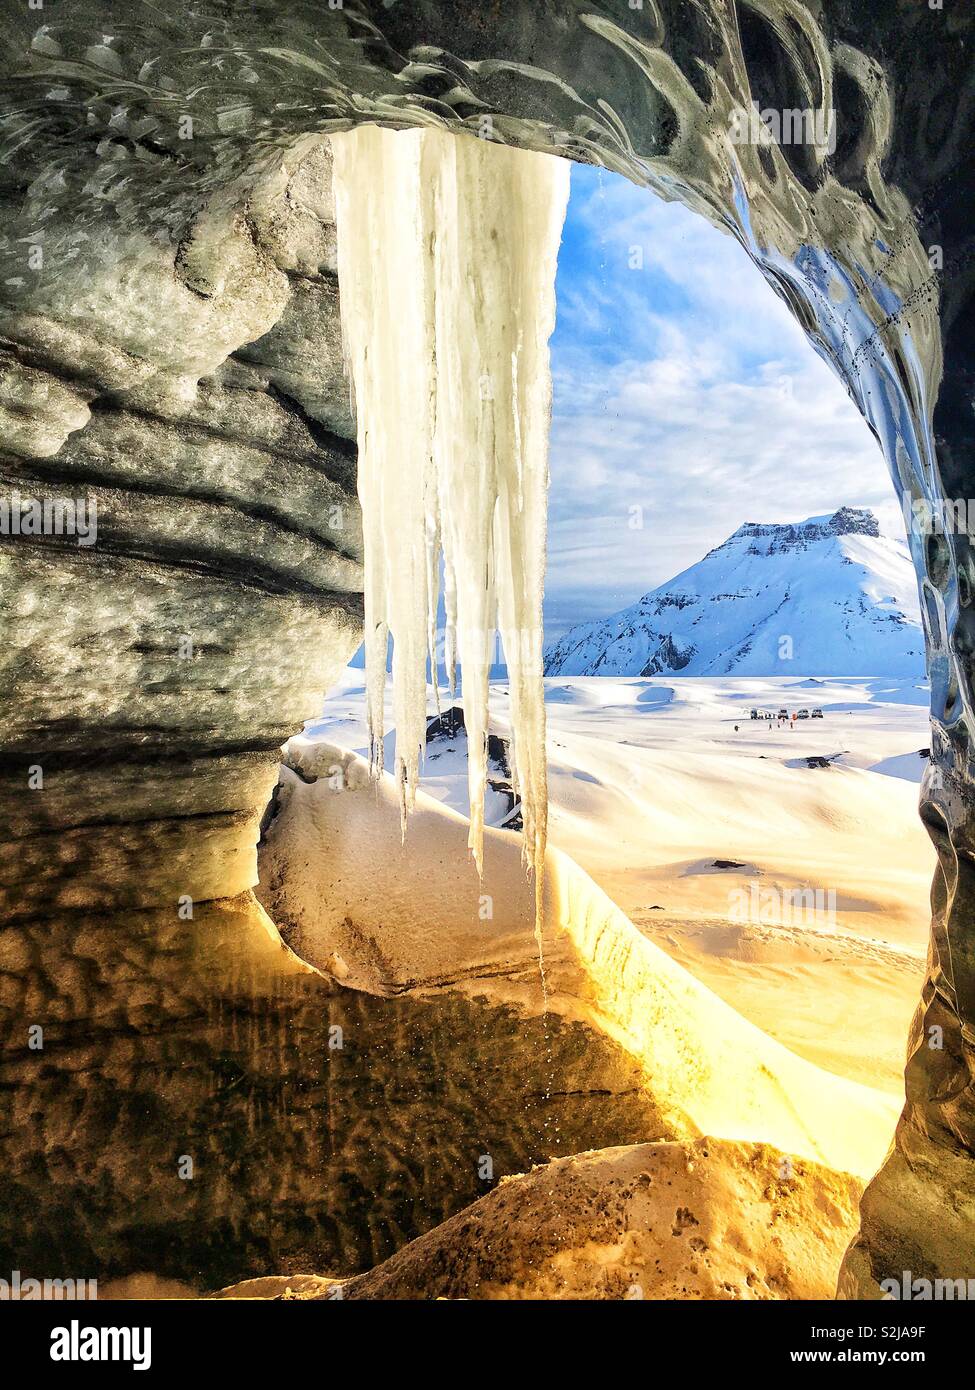 Ghiacciaio Katla caverna di ghiaccio nei pressi di Vik, Islanda che mostra un grande ghiacciolo nee l'ingresso della grotta a guardare i monti vicini. Foto Stock